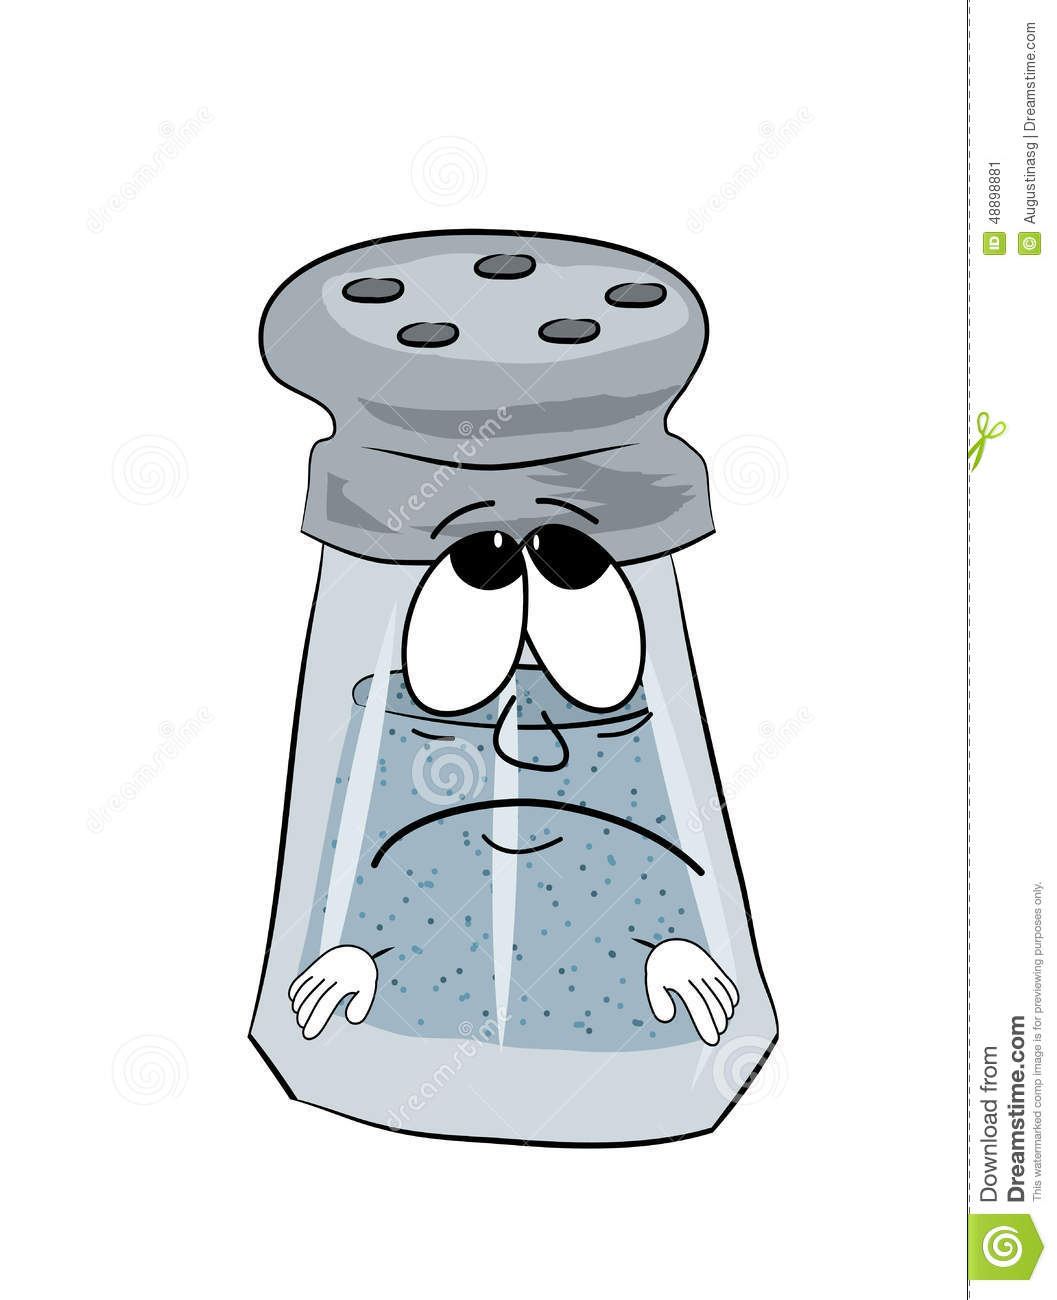 Sad Salt Cartoon Stock Illustration   Image  48898881